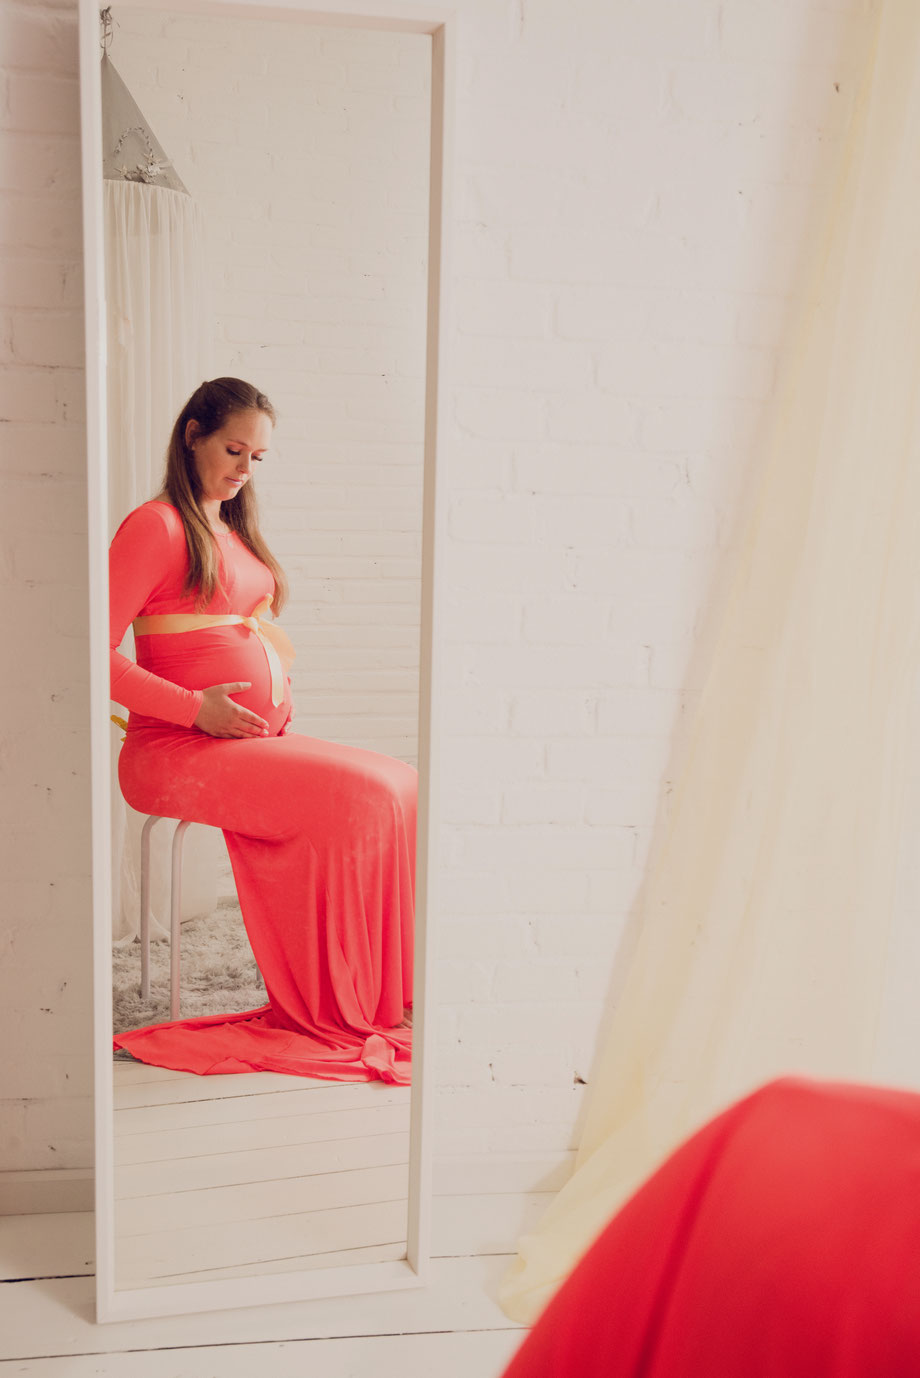 zwangere vrouw in rode jurk in de spiegel